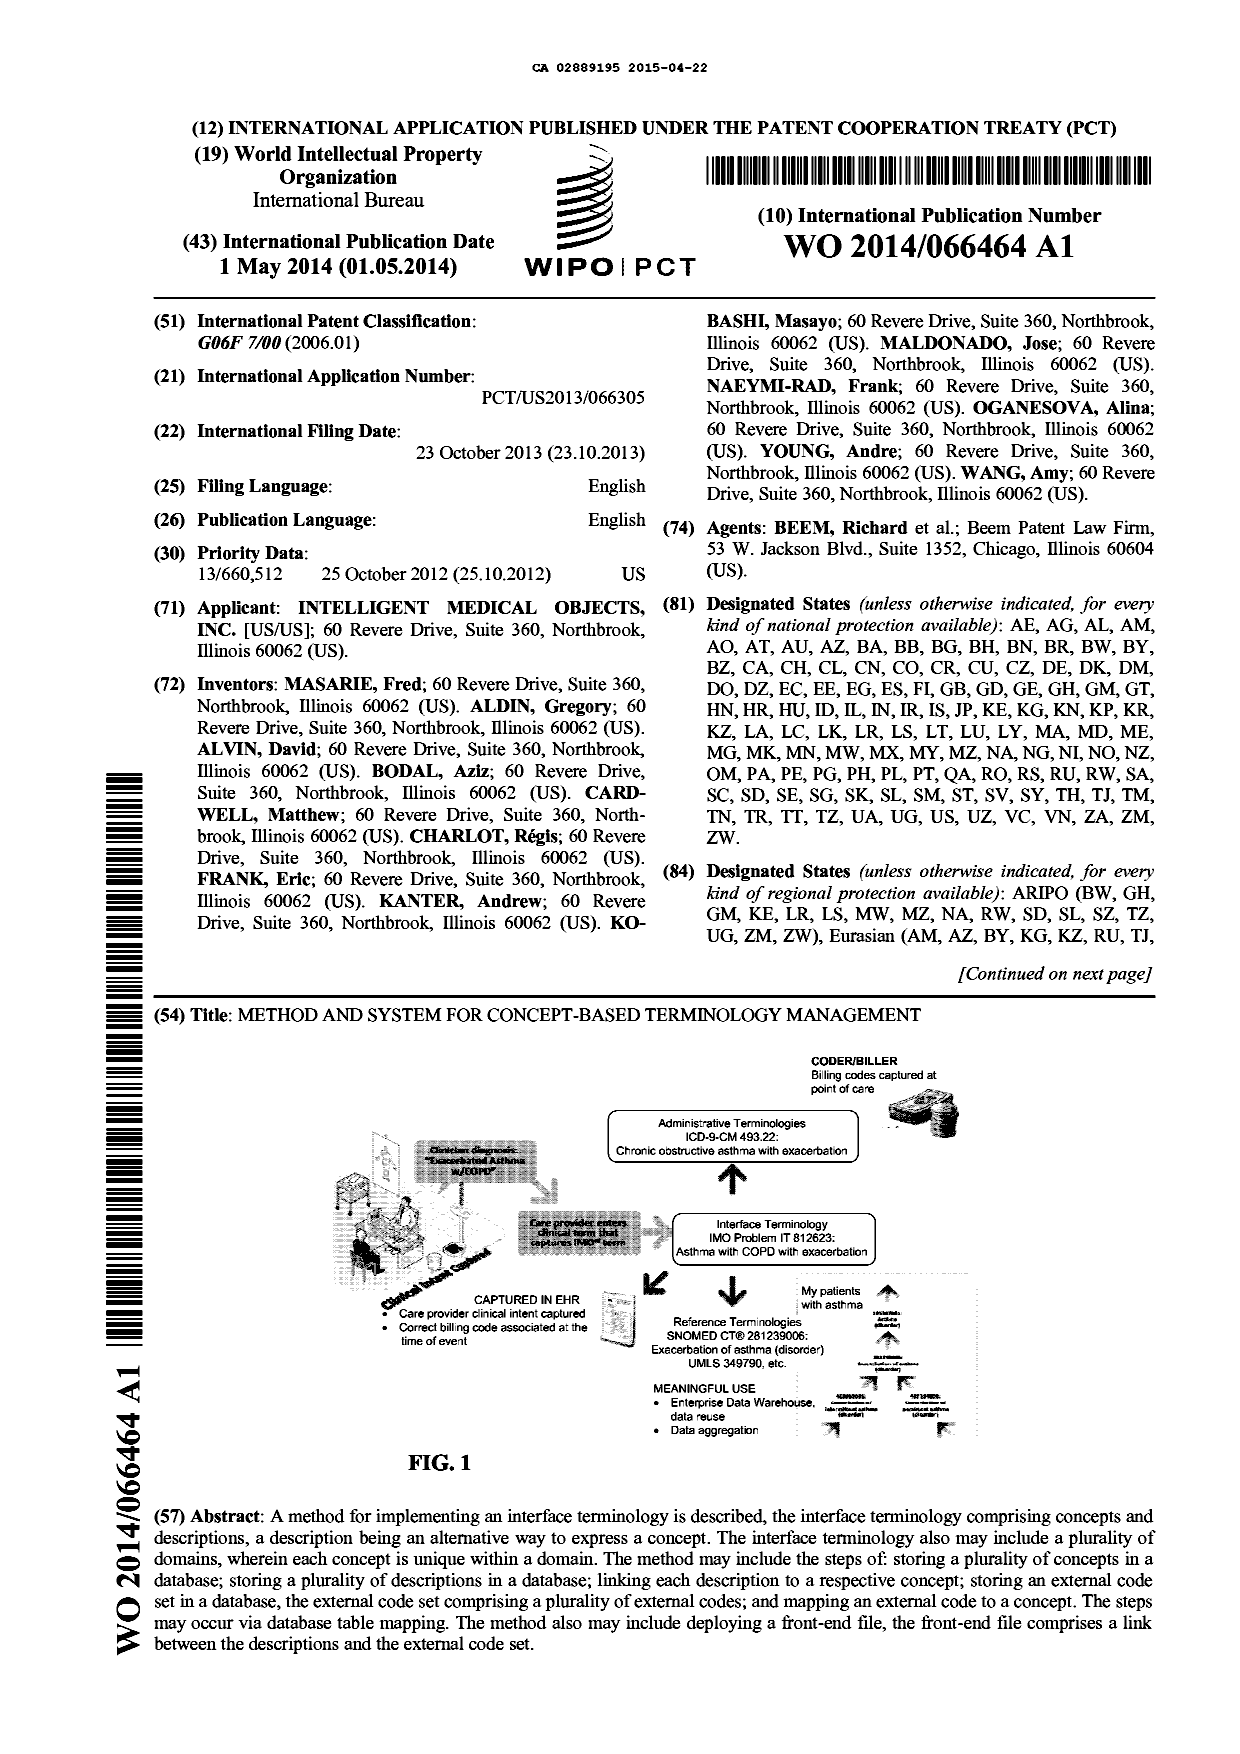 Document de brevet canadien 2889195. Abrégé 20141222. Image 1 de 2